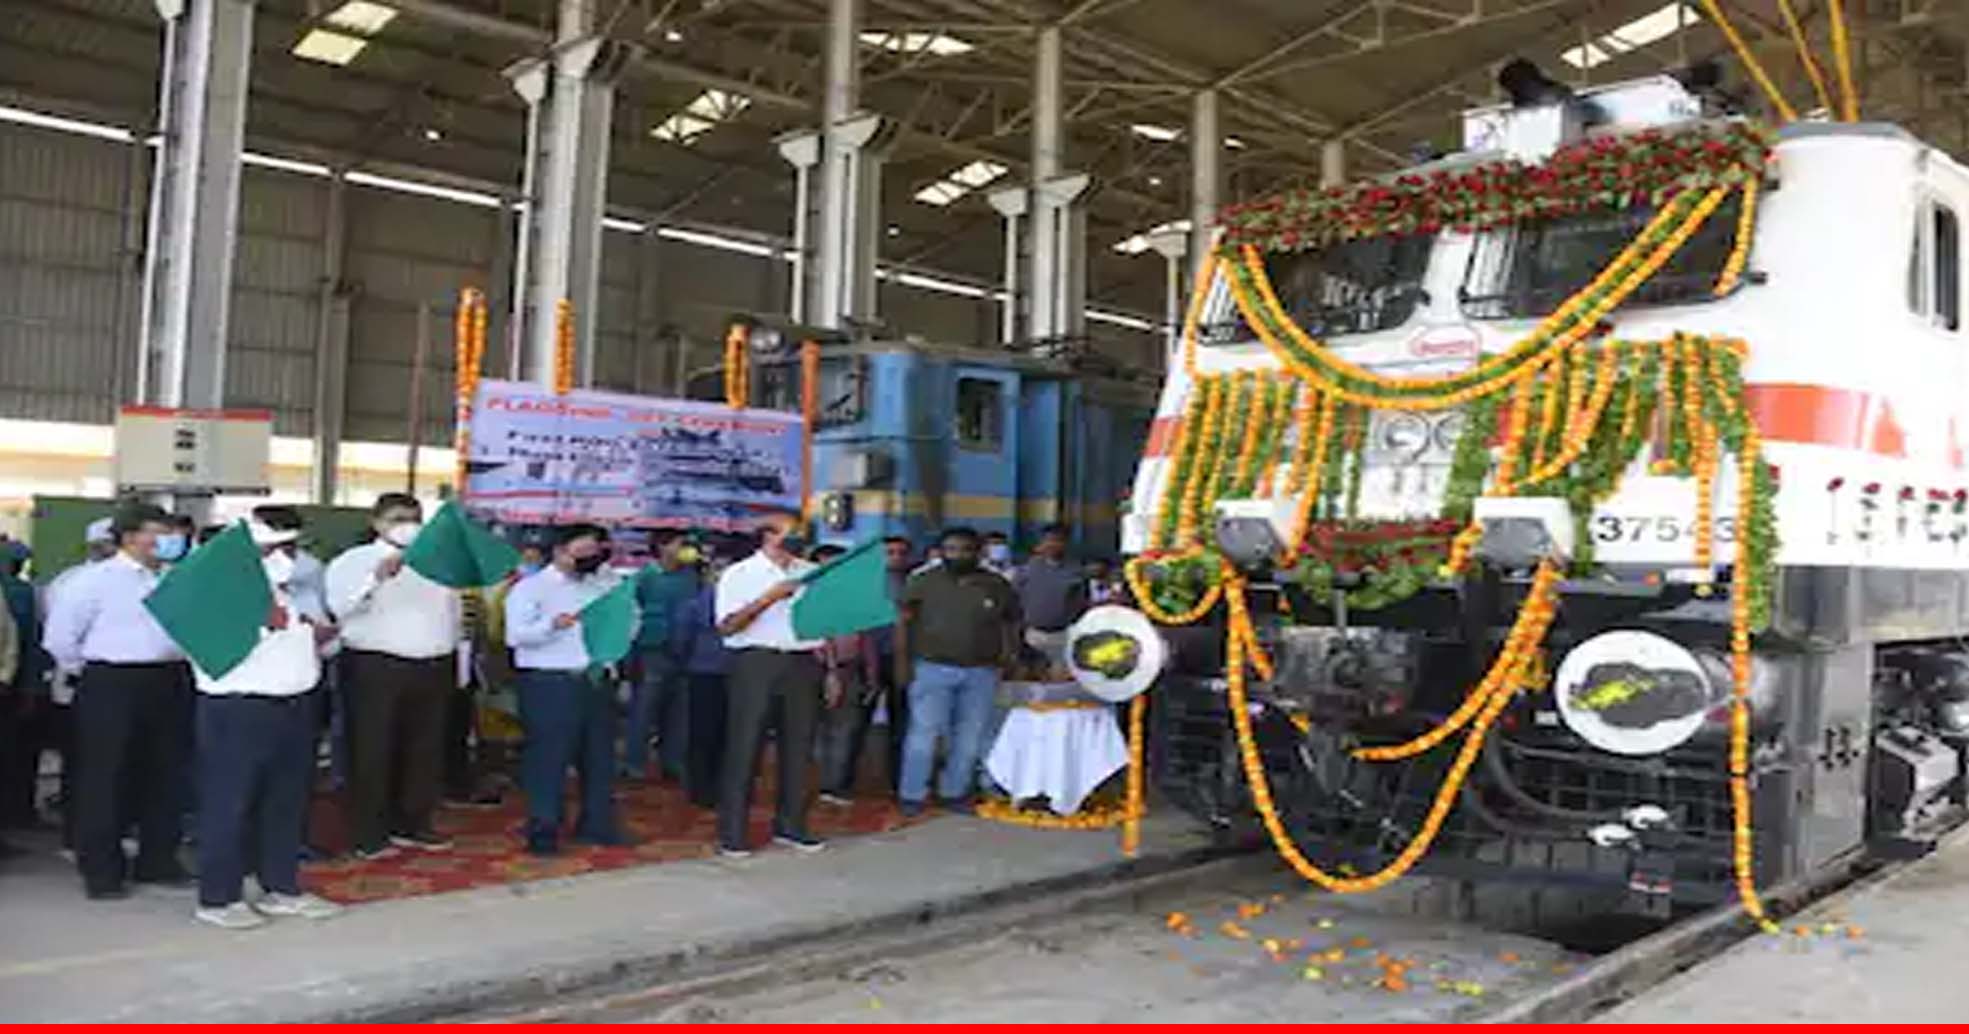 ट्रेनों के परिचालन में पूर्वोत्तर रेलवे ने शामिल किया WAP-7 इलेक्ट्रिक इंजन